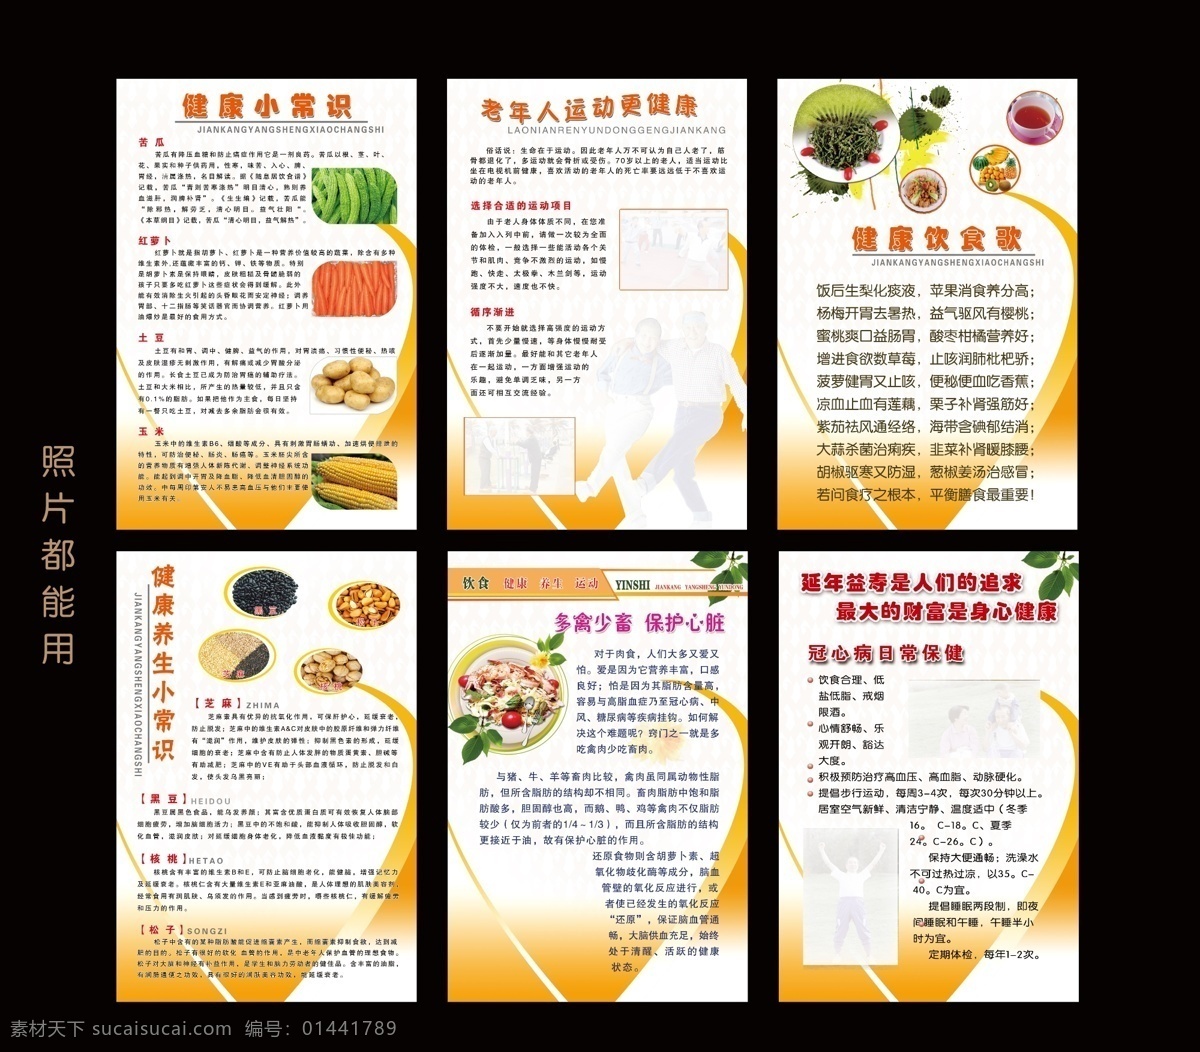 健康小常识 老人健康常识 五谷杂粮 作用 松子的作用 蔬菜的作用 简单 清澈 食疗歌 展板模板 广告设计模板 源文件